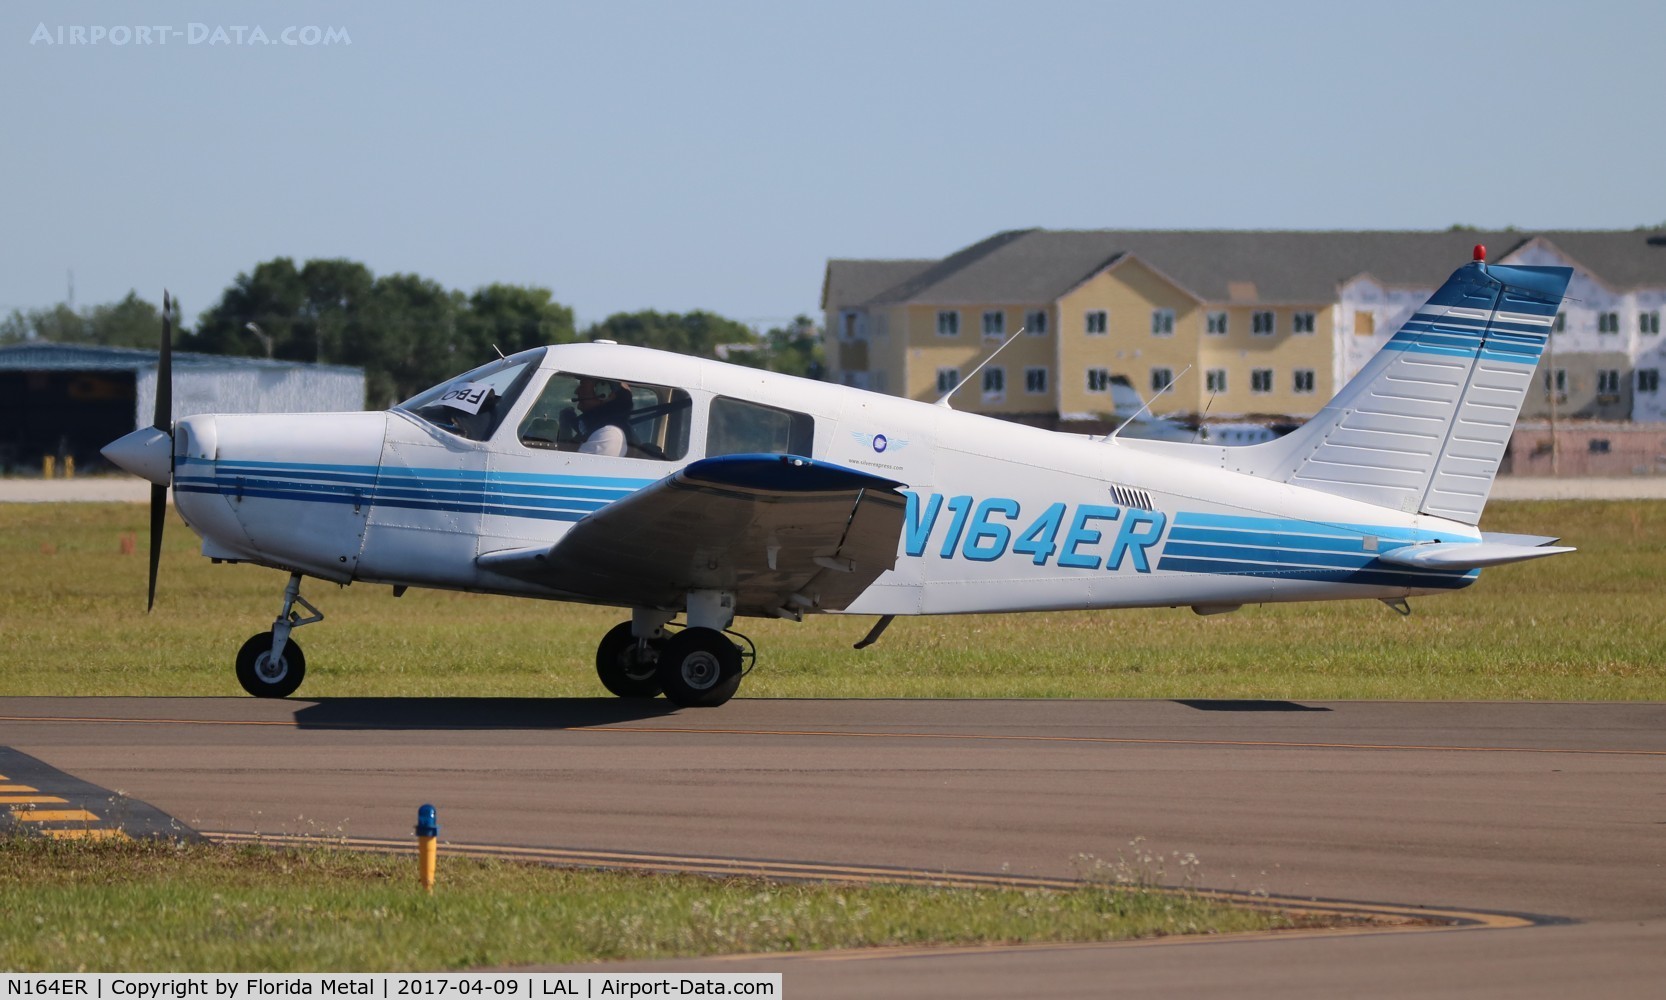 N164ER, 1989 Piper PA-28-161 C/N 2841180, PA-28-161